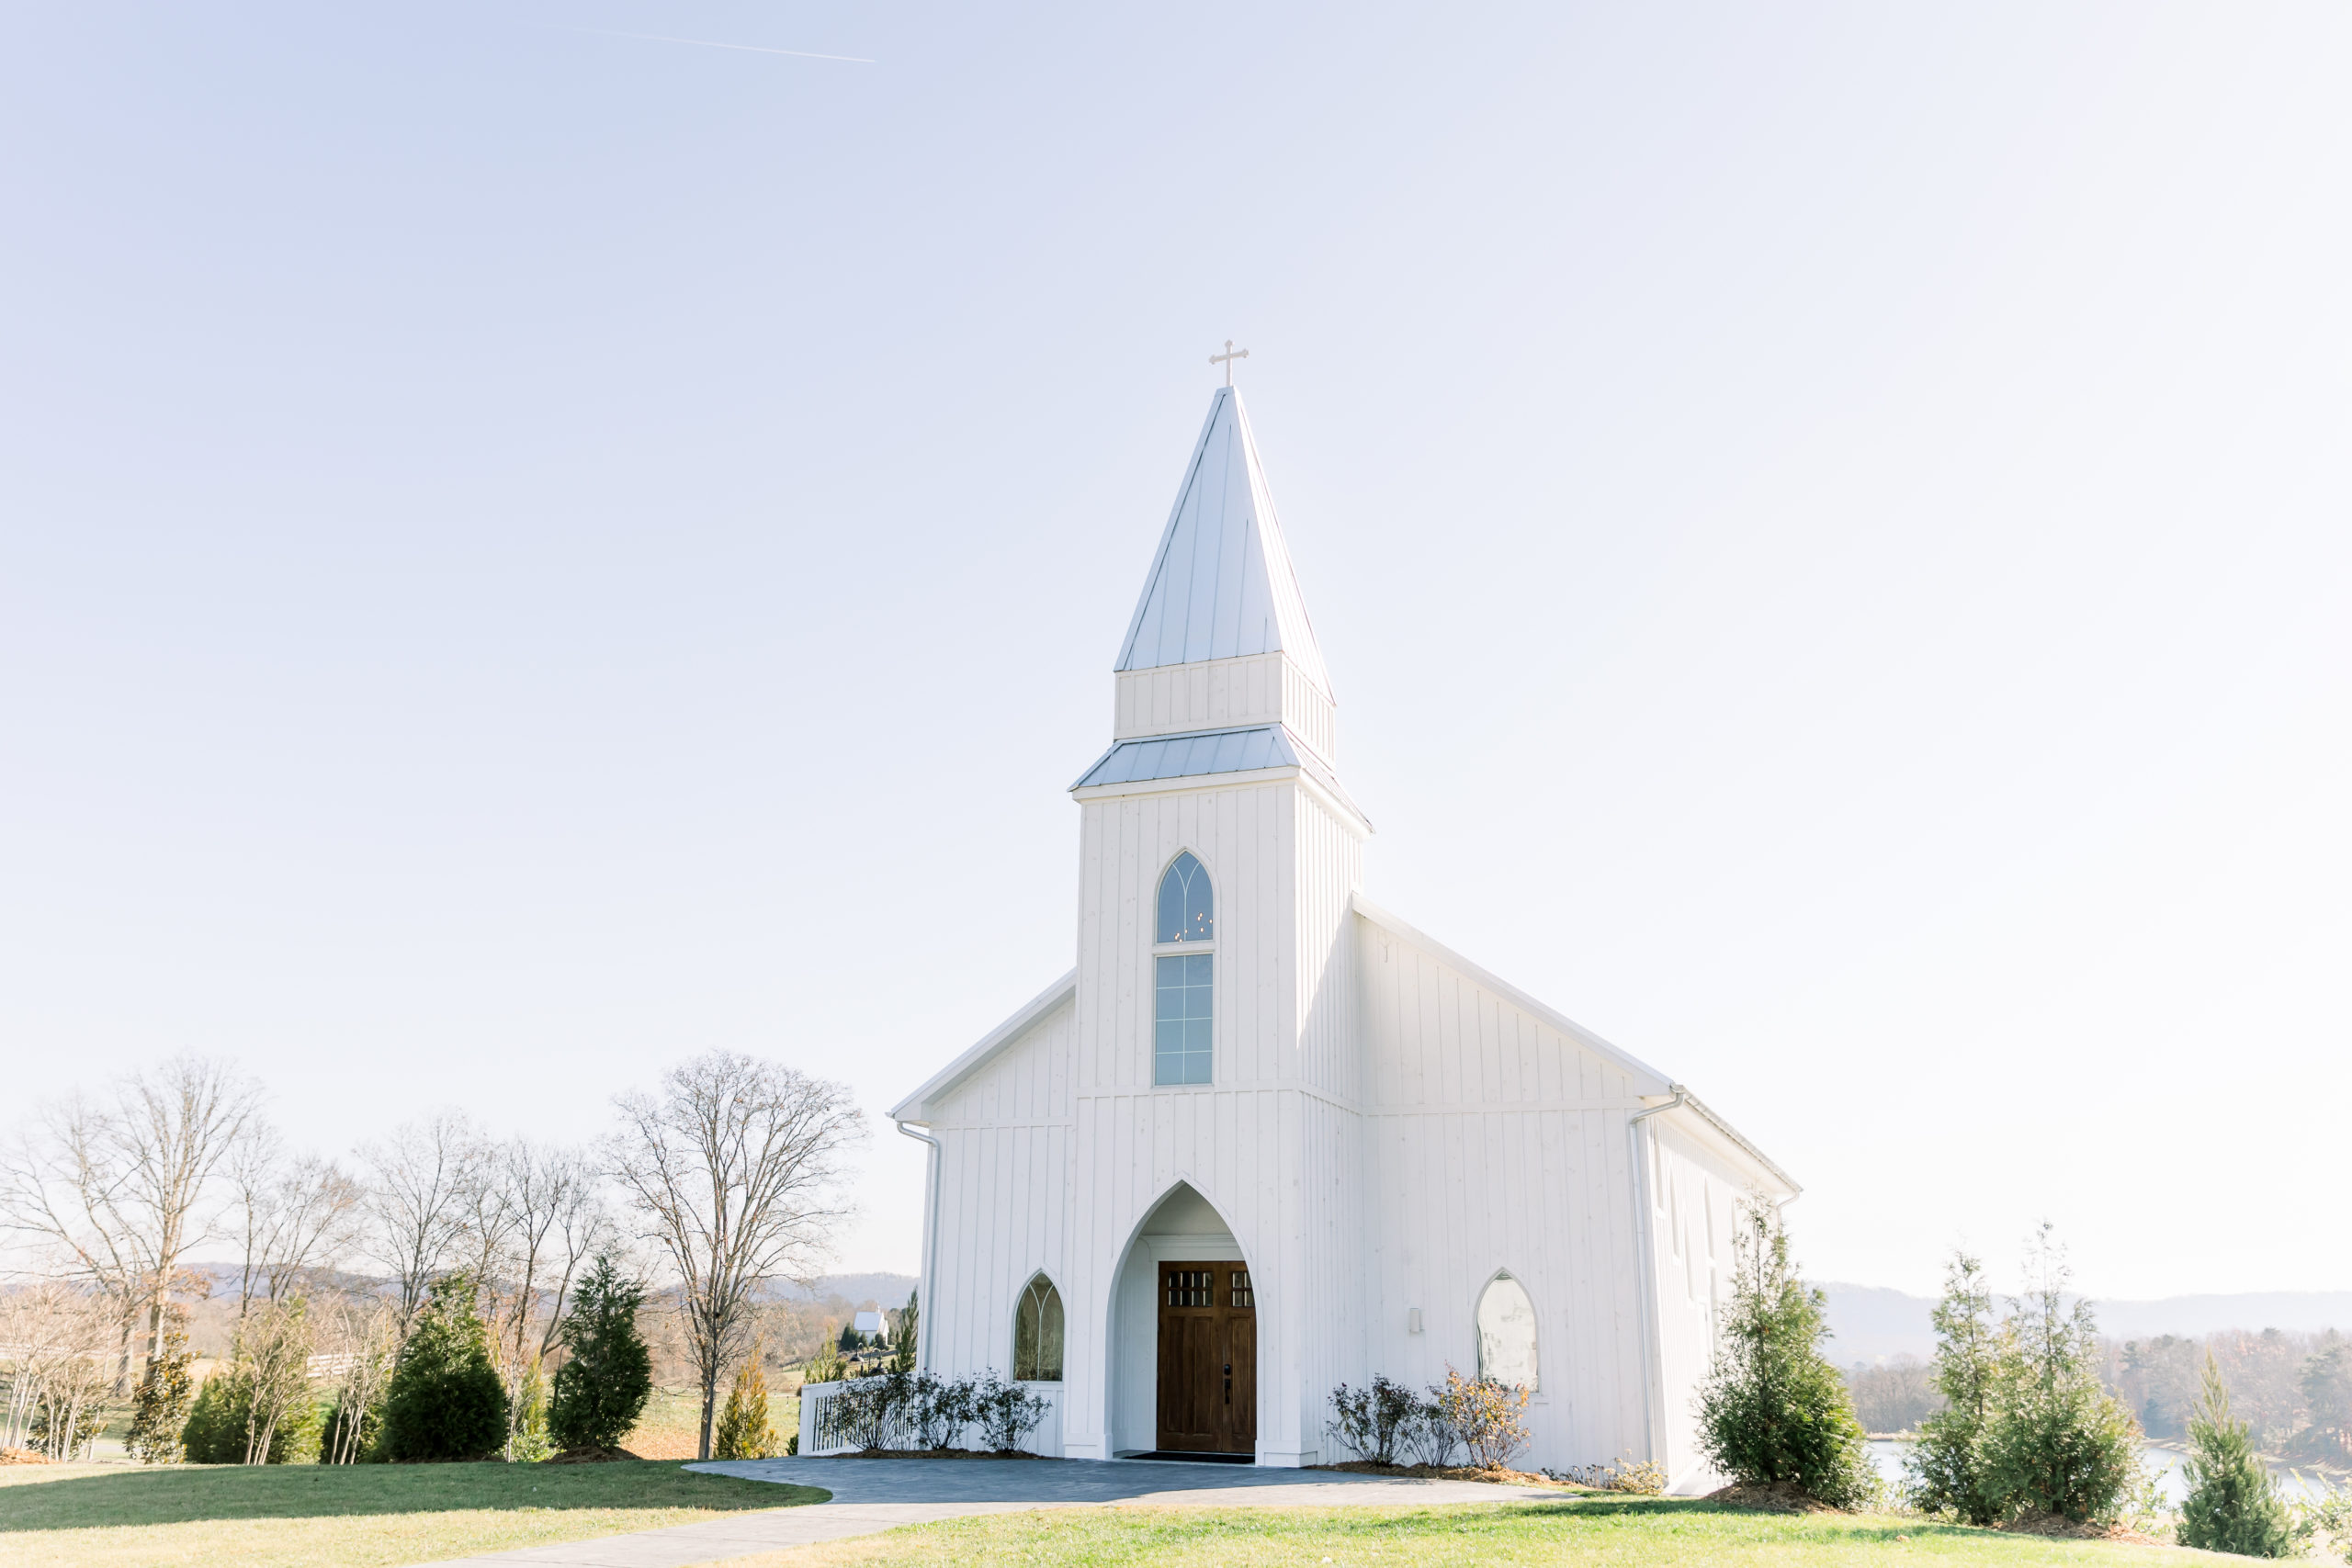 chattanooga wedding chapel by wedding photographer alyssa rachelle photography